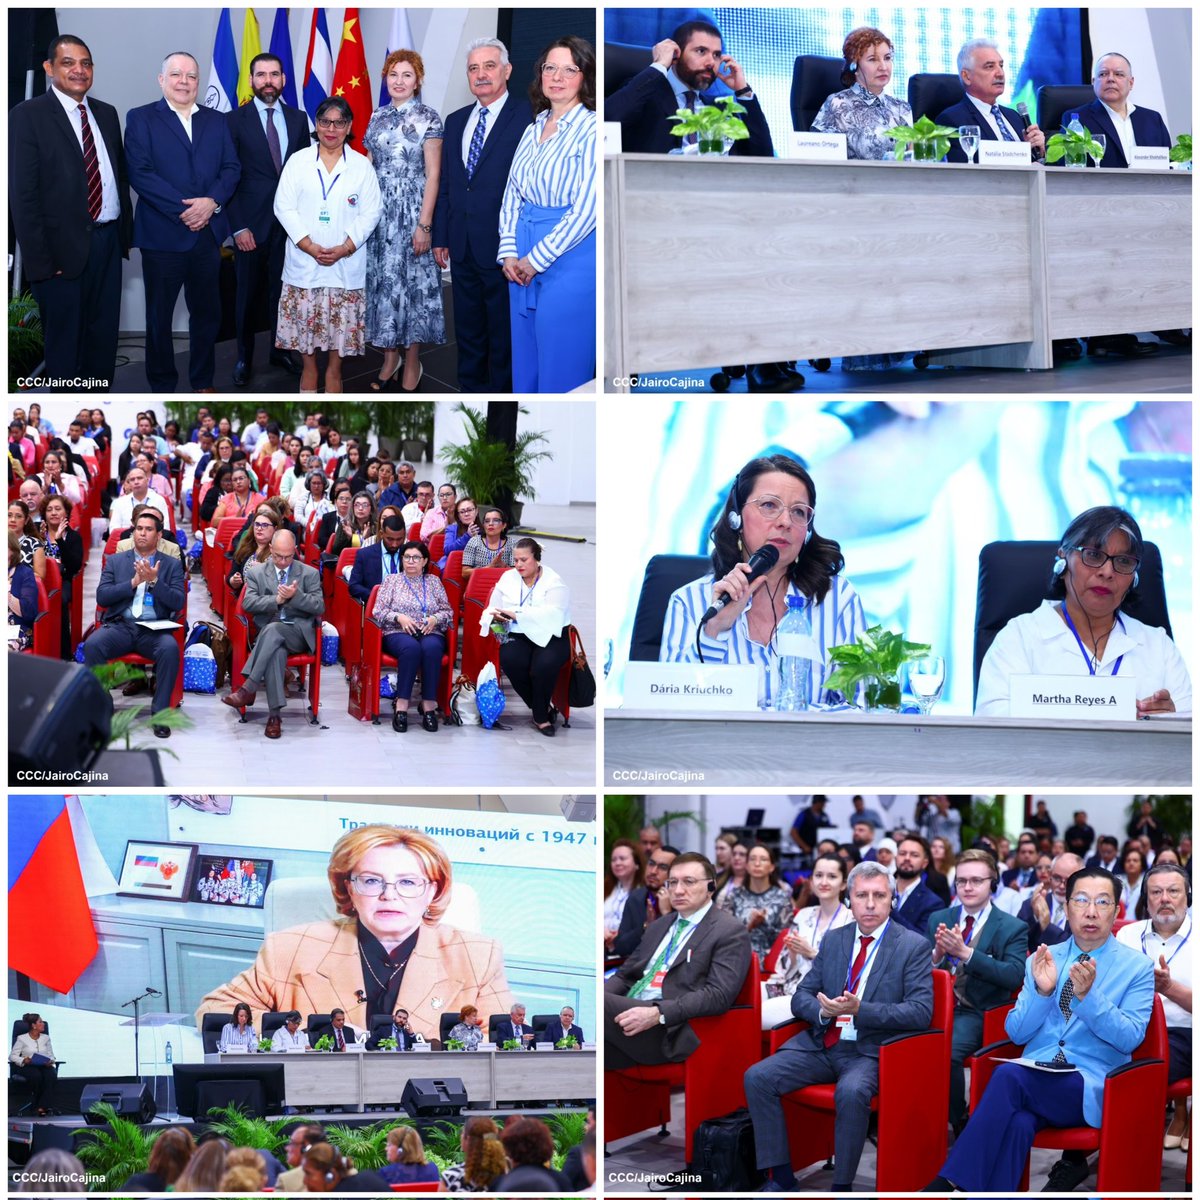 𝙑𝙄𝙄𝙄 𝘾𝙤𝙣𝙜𝙧𝙚𝙨𝙤 𝙁𝙖𝙧𝙢𝙖𝙘𝙚́𝙪𝙩𝙞𝙘𝙤 𝙄𝙣𝙩𝙚𝙧𝙣𝙖𝙘𝙞𝙤𝙣𝙖𝙡 𝙍𝙪𝙨𝙞𝙖-𝙉𝙞𝙘𝙖𝙧𝙖𝙜𝙪𝙖 22 de mayo se realizó la ceremonia inaugural Con más de 30 ponentes. #Nicaragua 🇳🇮 #Rusia 🇷🇺 #biotecnologia #4519LaPatriaLaRevolución